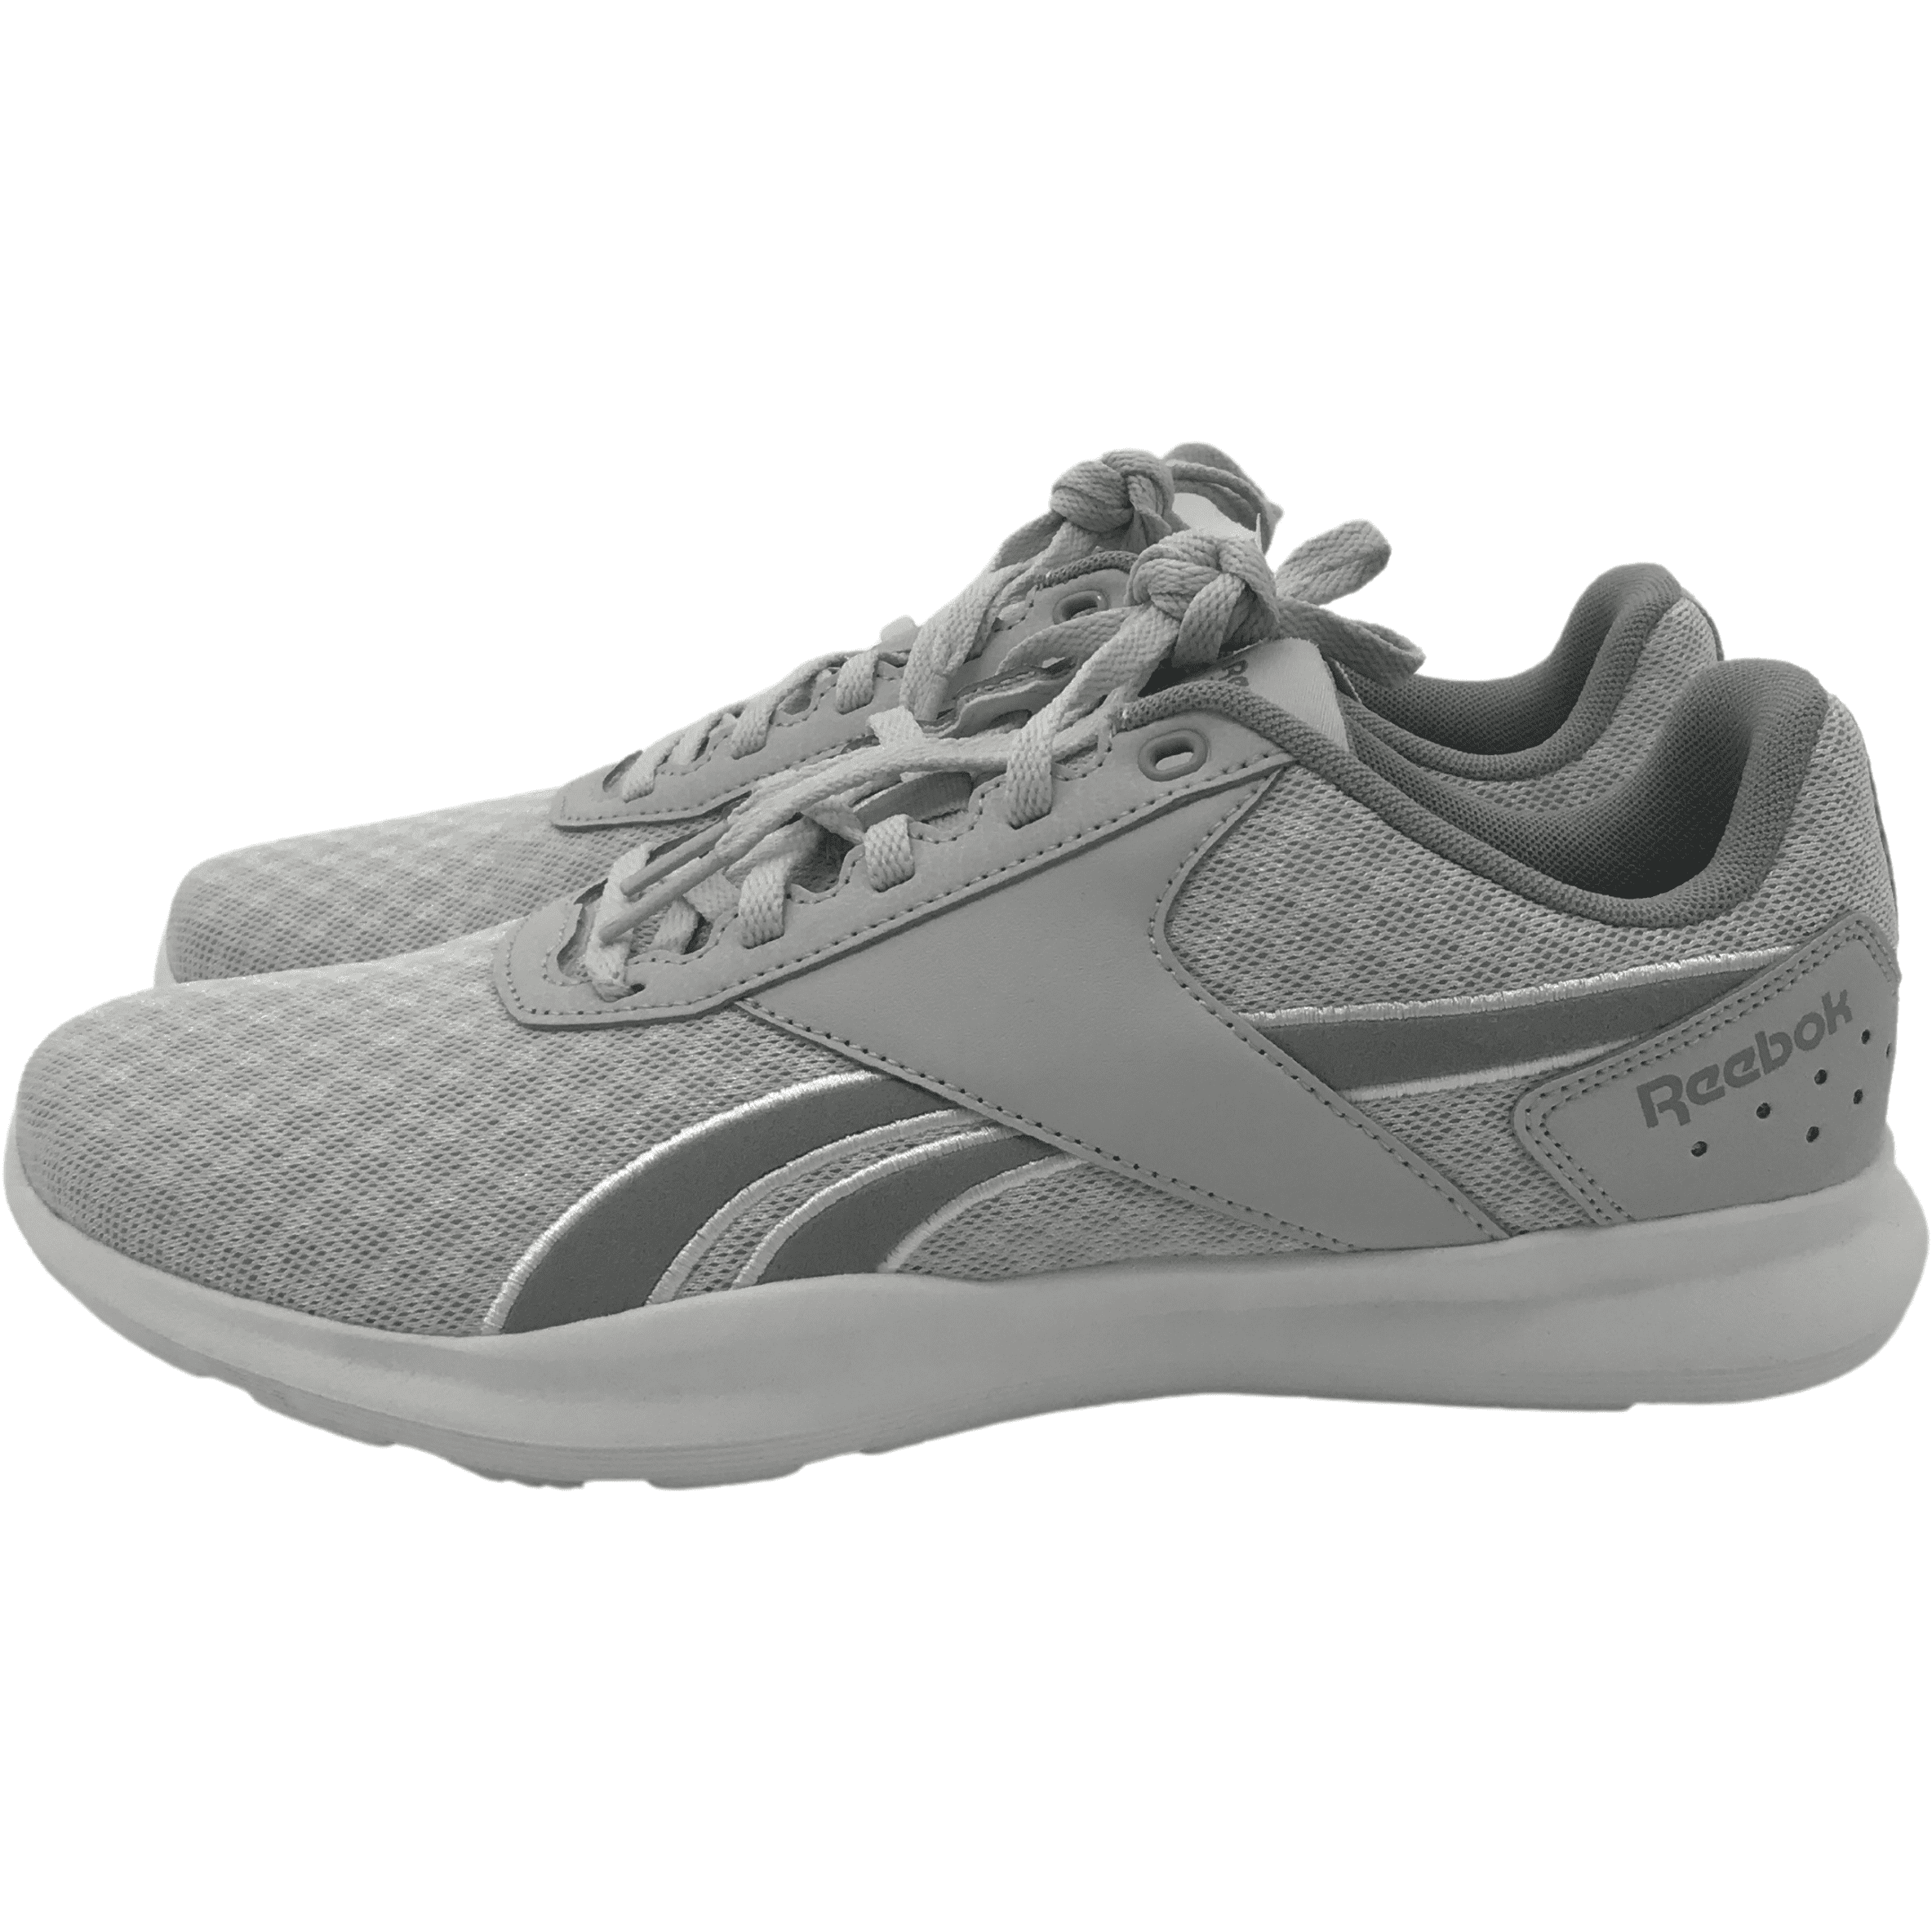 Reebok Women's Running Shoe: Dart TR 2.0 / Training Shoe / Grey / Size 9.5